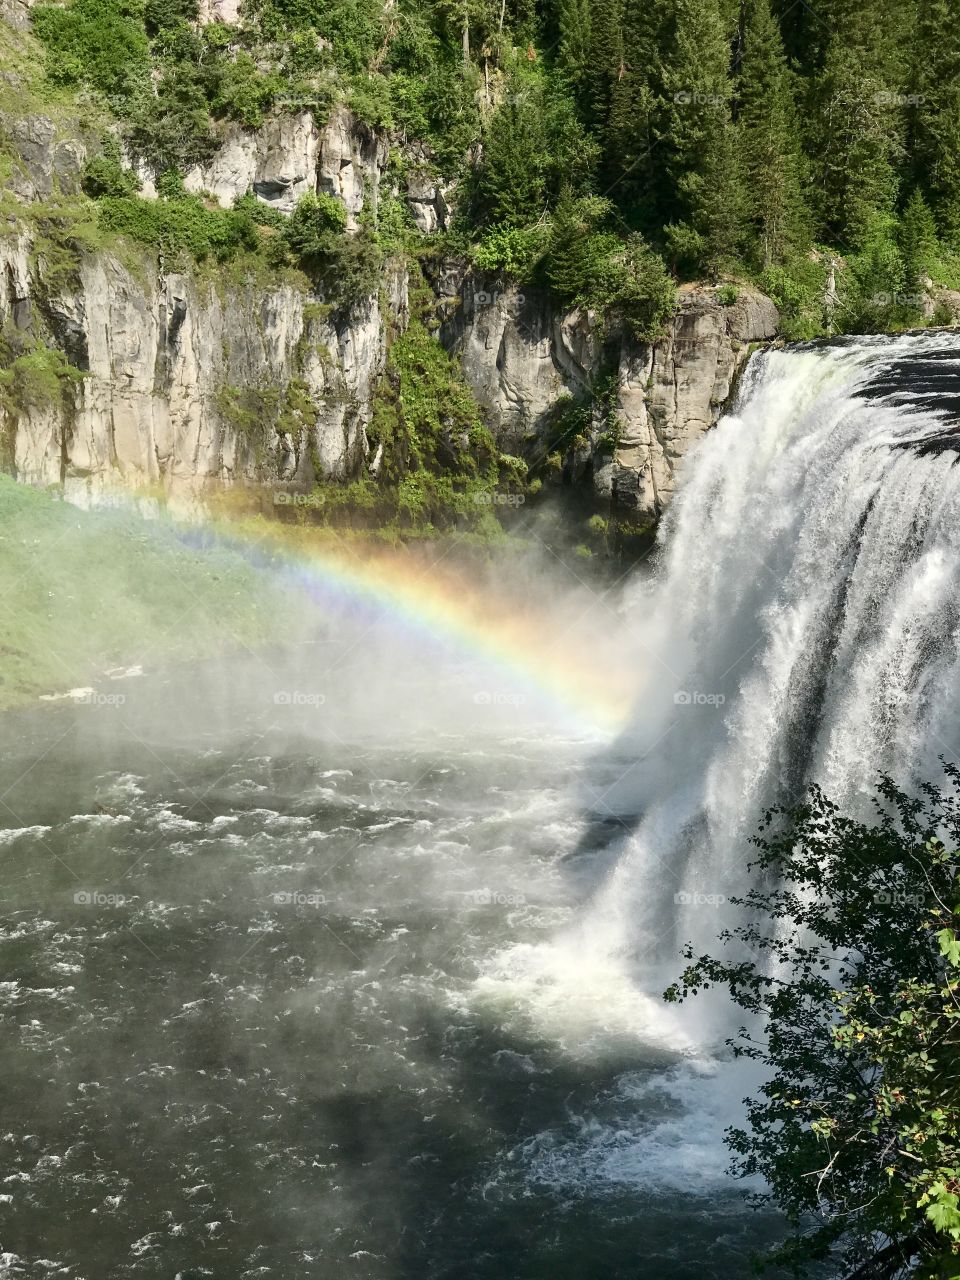 Rainbow at the falls